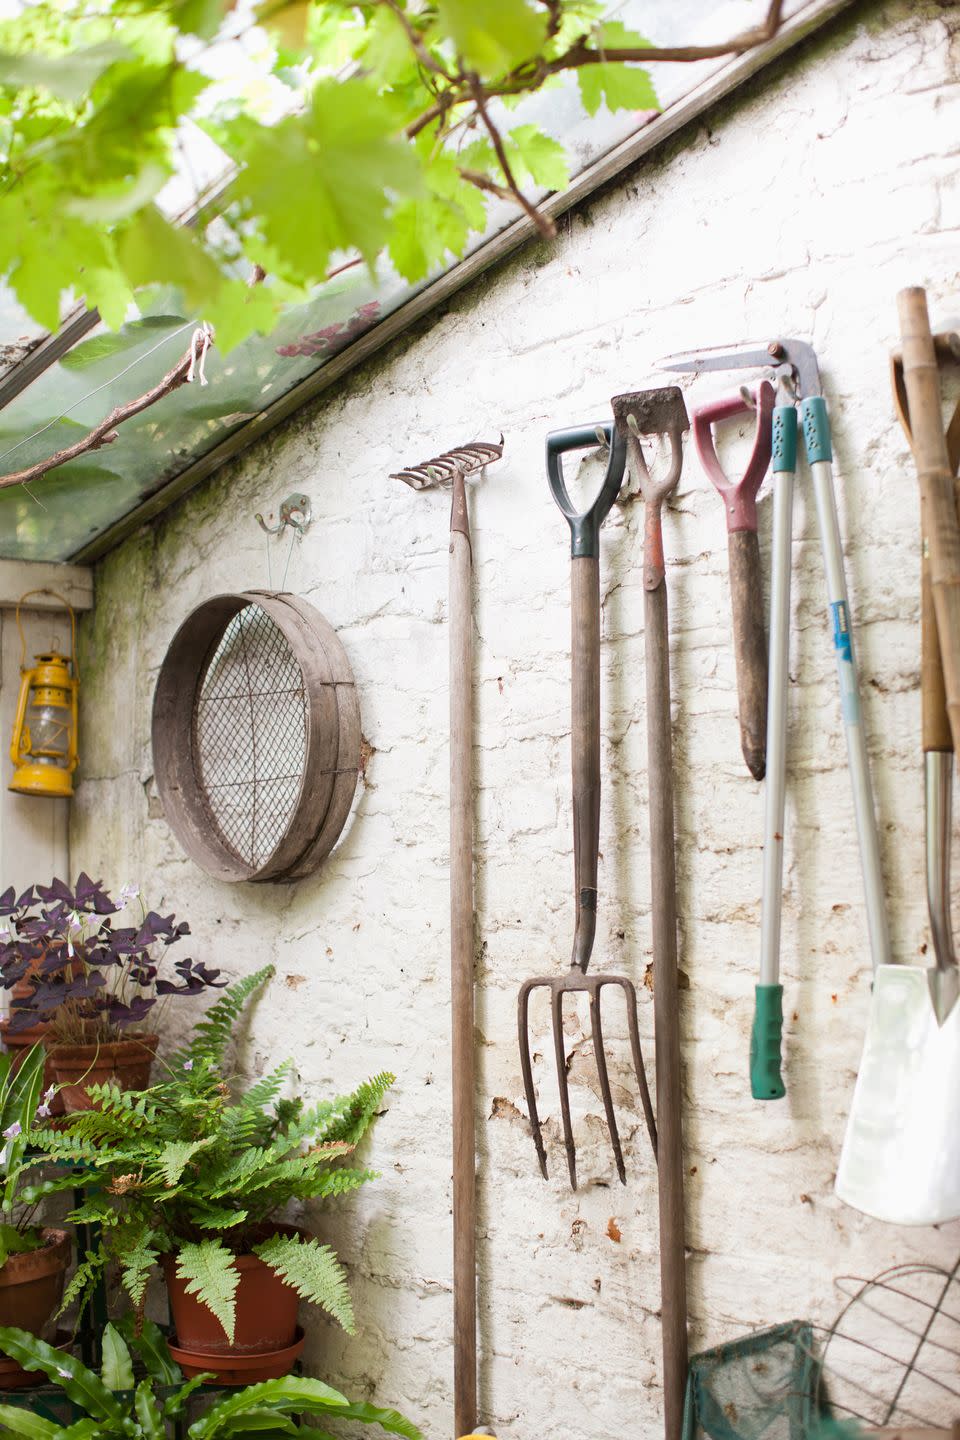 9) Clean your garden tools